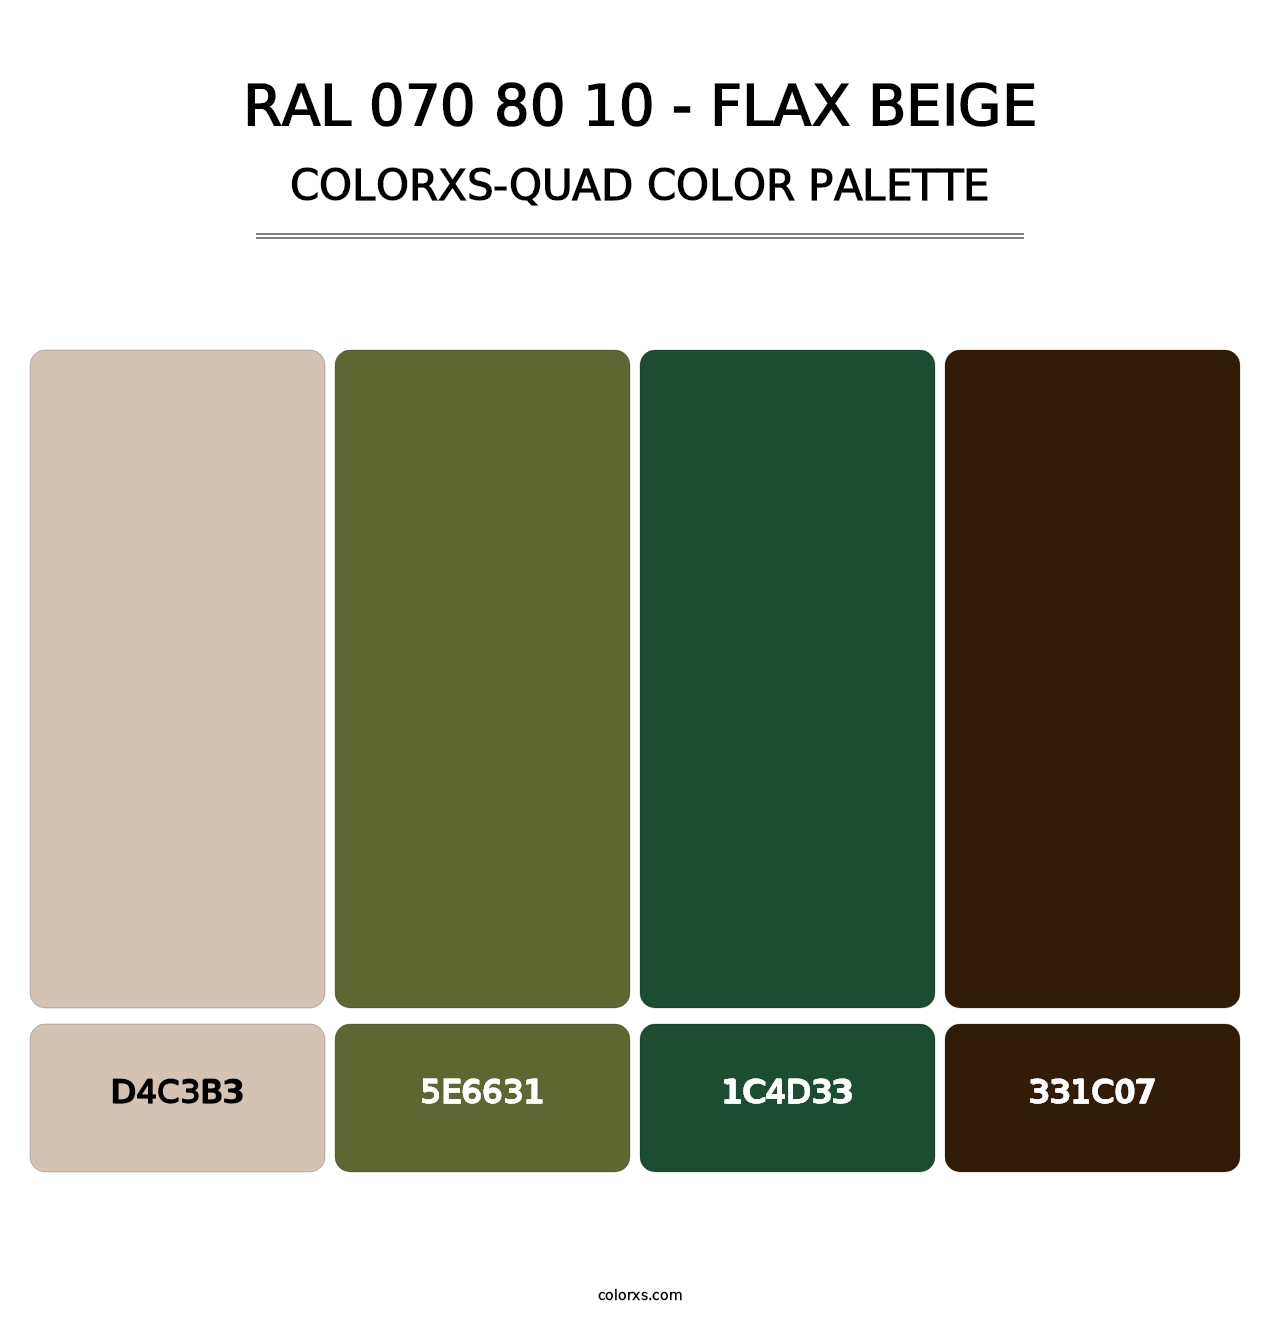 RAL 070 80 10 - Flax Beige - Colorxs Quad Palette